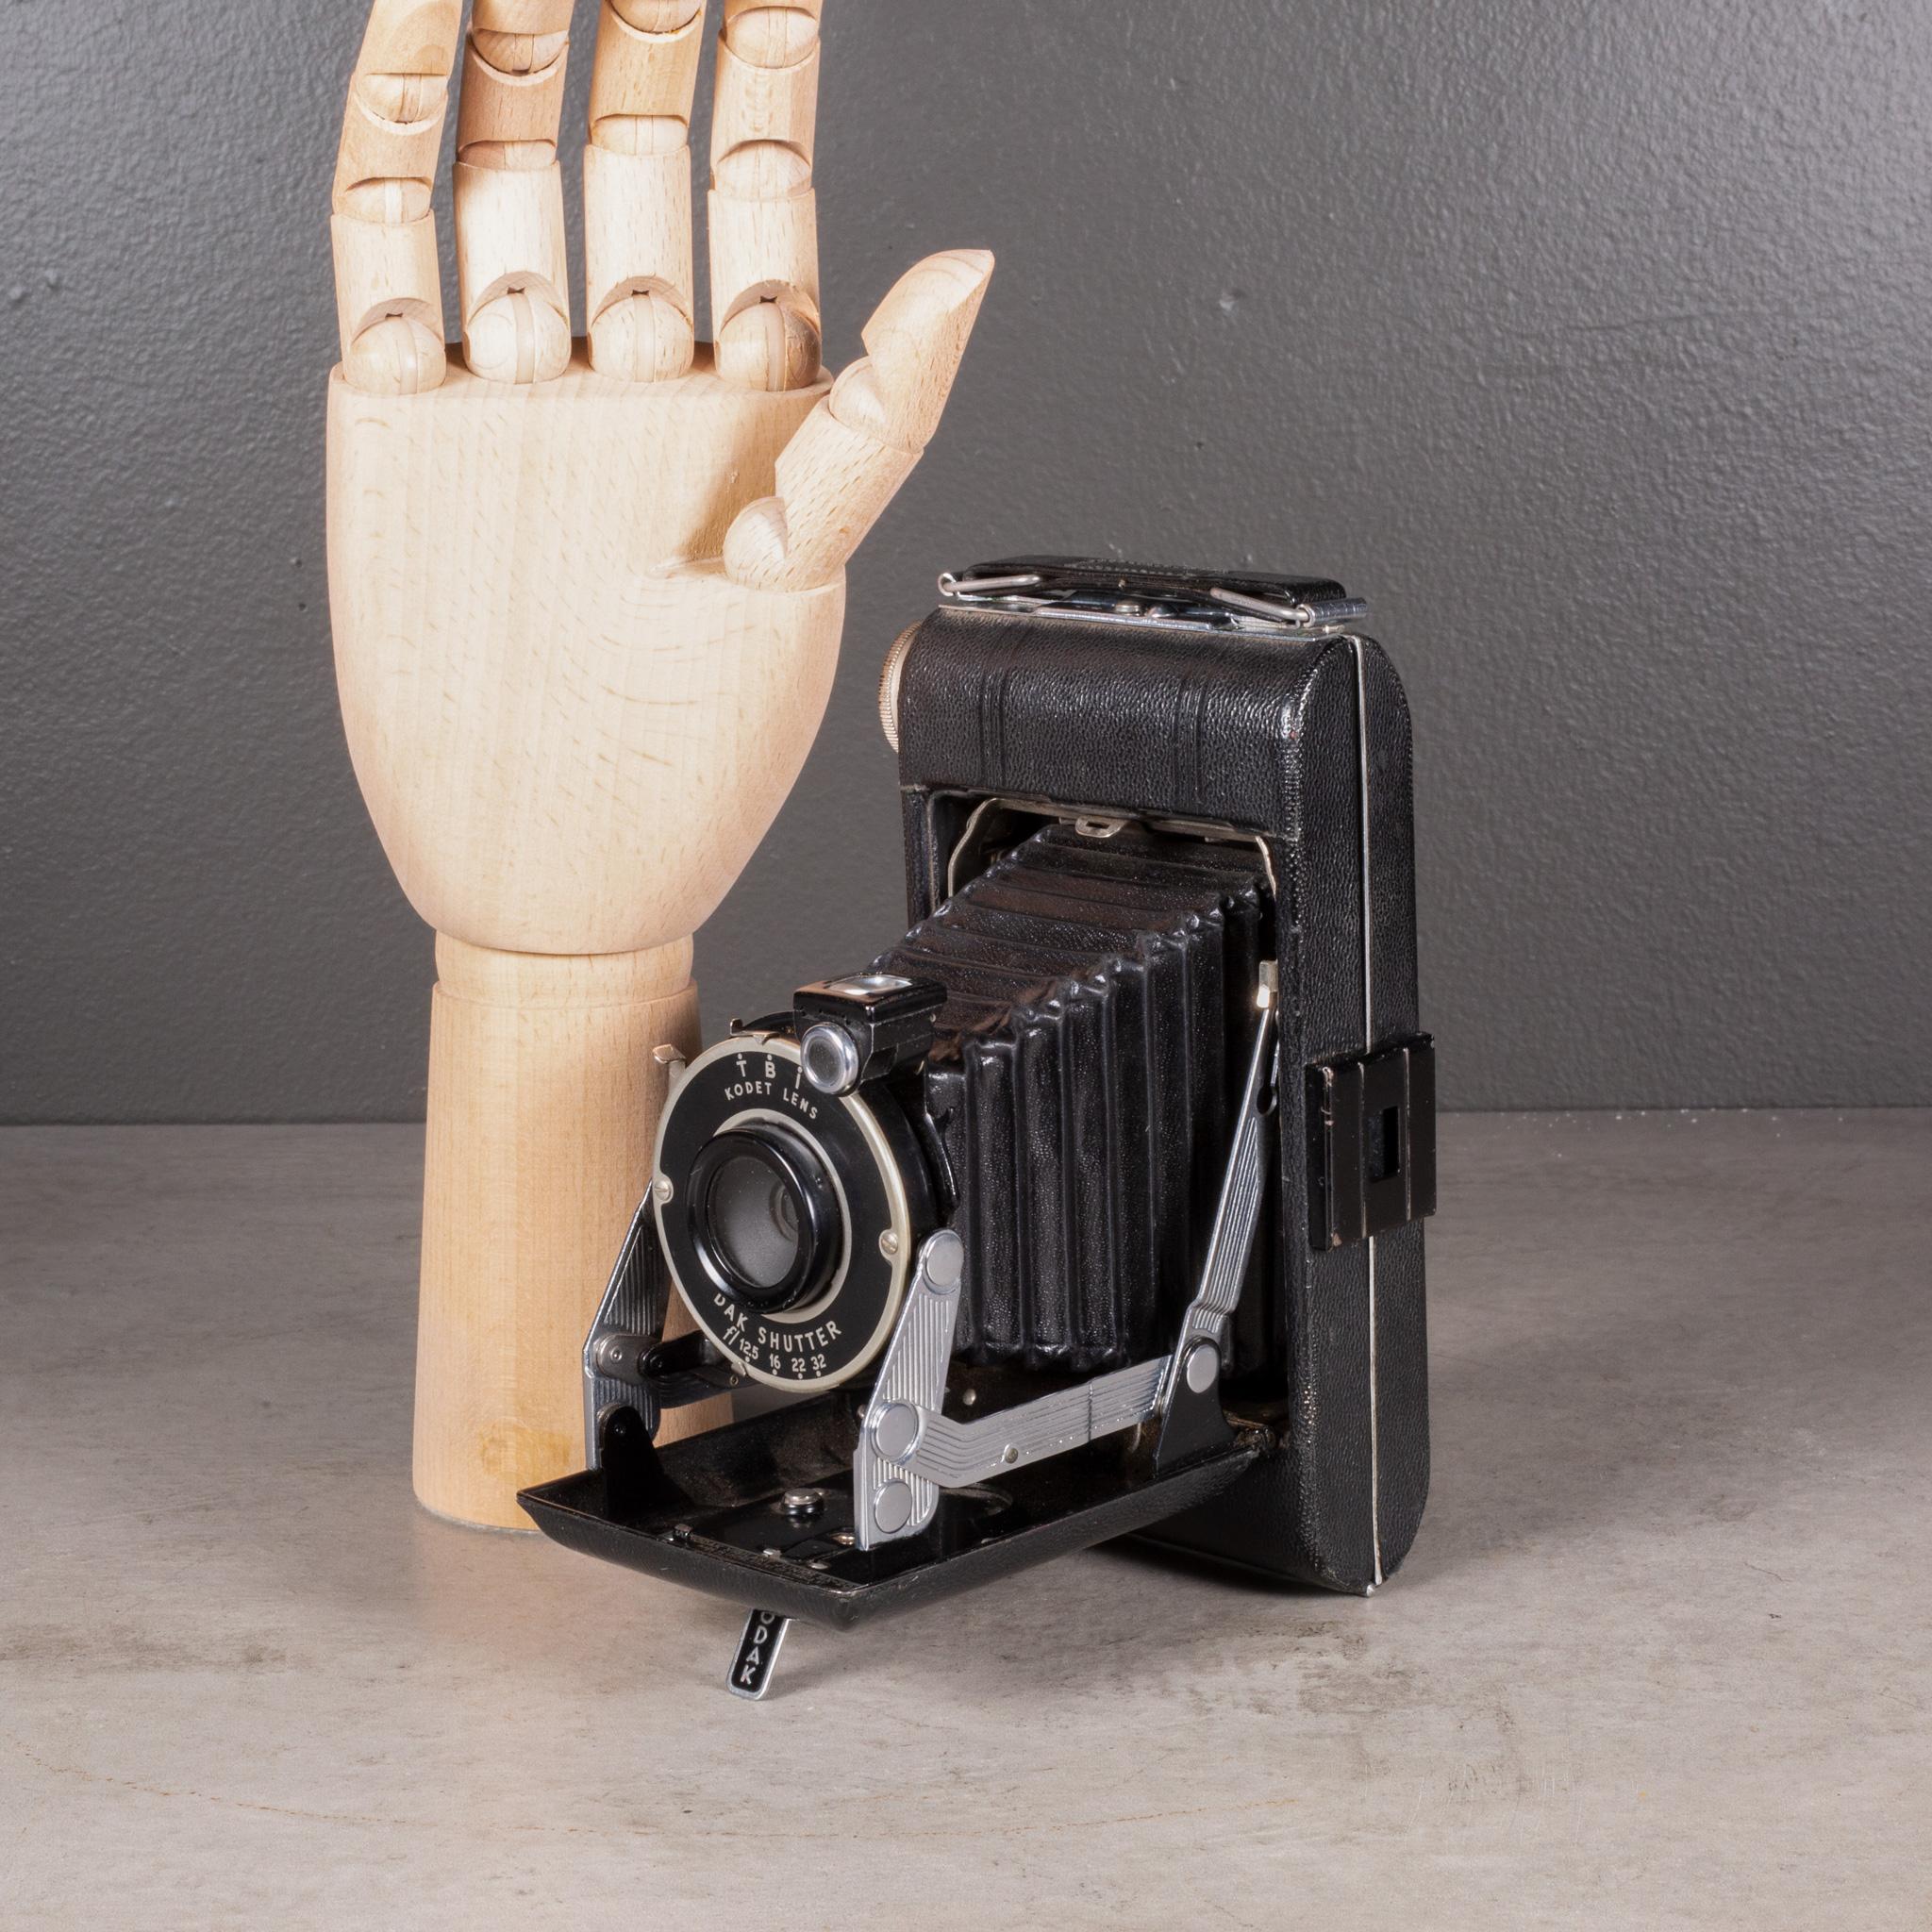 À PROPOS DE

Appareil photo pliant Kodak Vigilante Junior Six-20 Art déco avec boîtier en cuir, accents chromés et viseur rabattable. Se plie proprement pour ne plus mesurer qu'une dizaine de centimètres.

Représenté avec une main grandeur nature.

